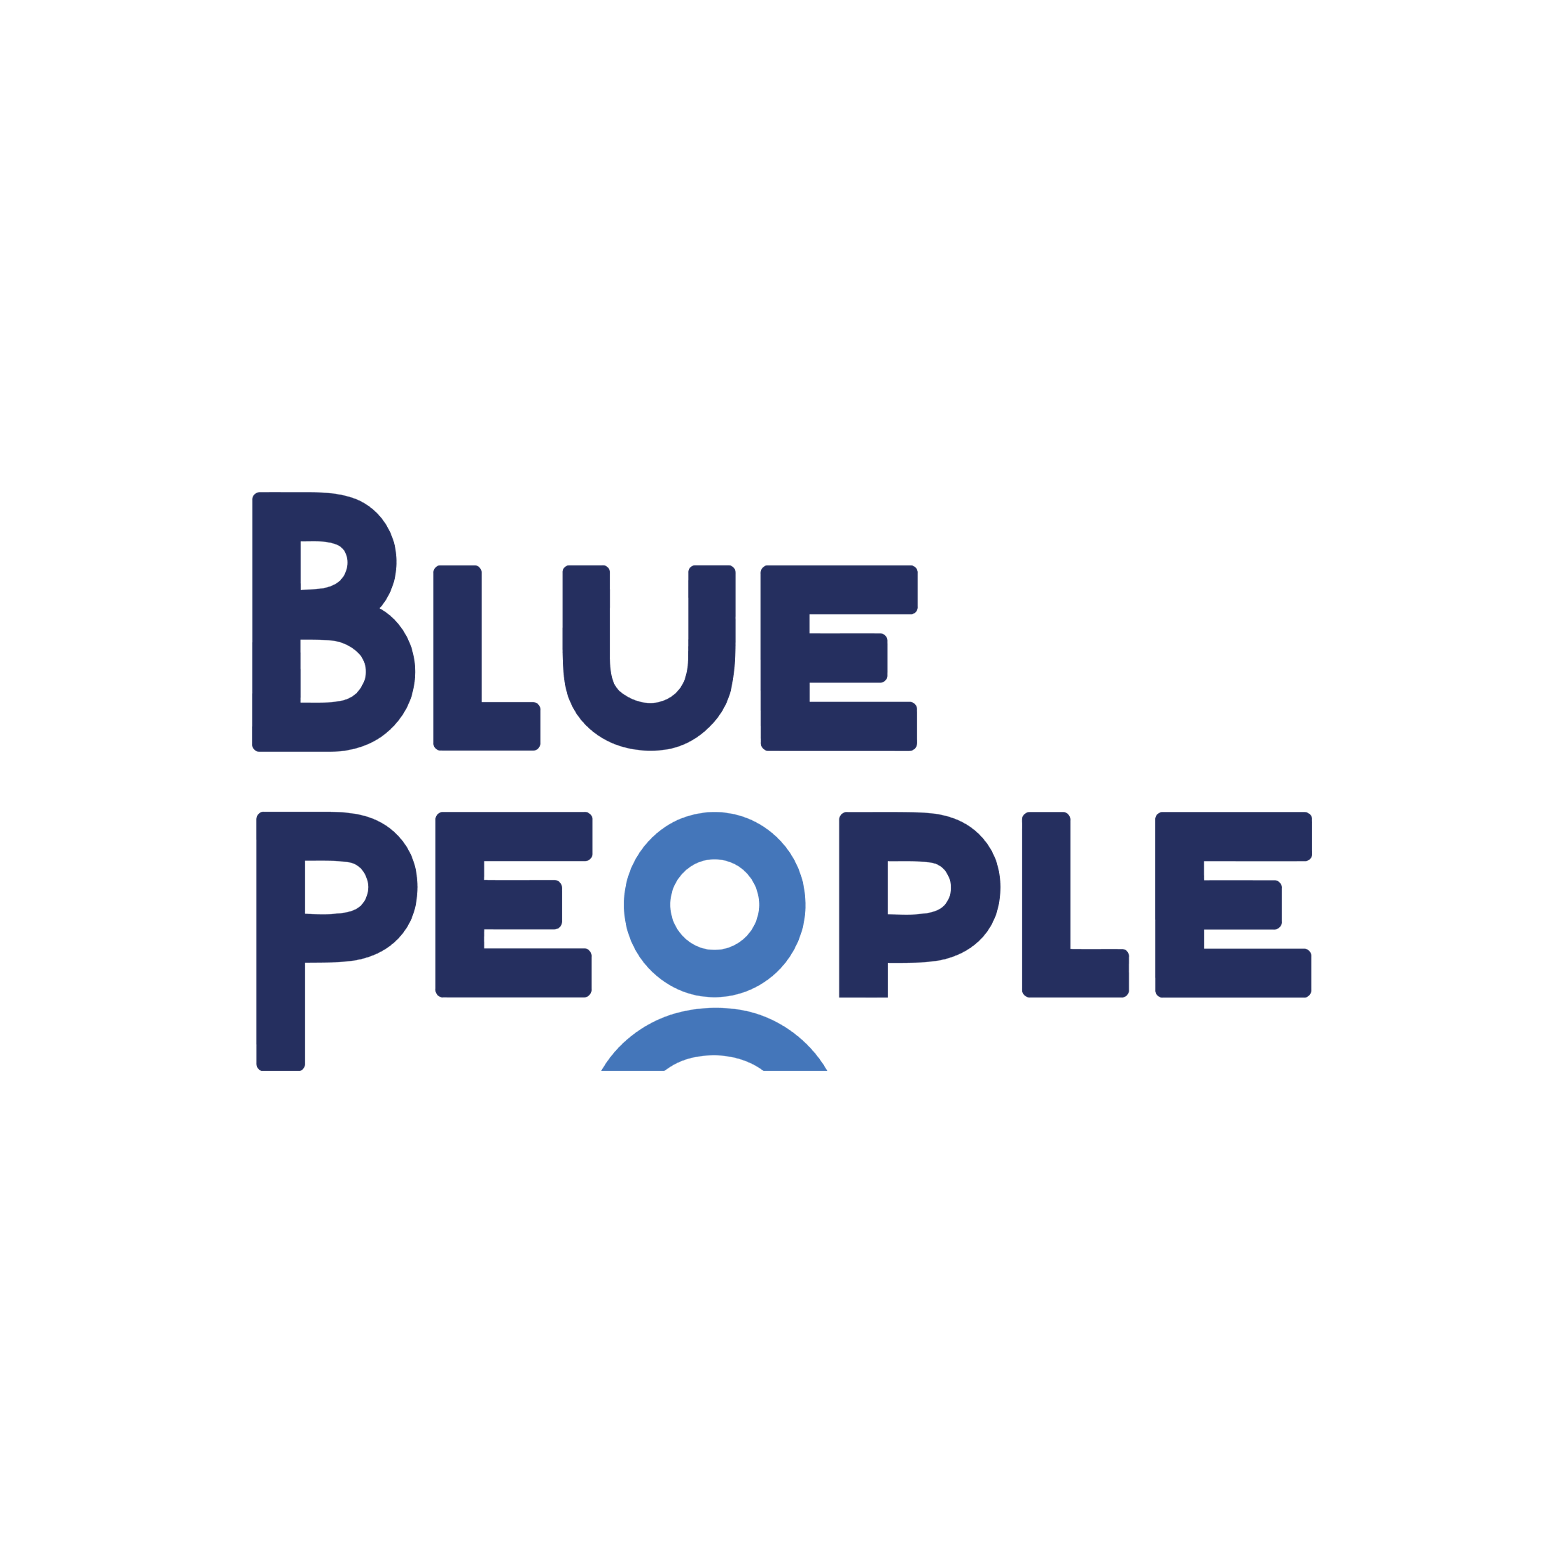 Blue People